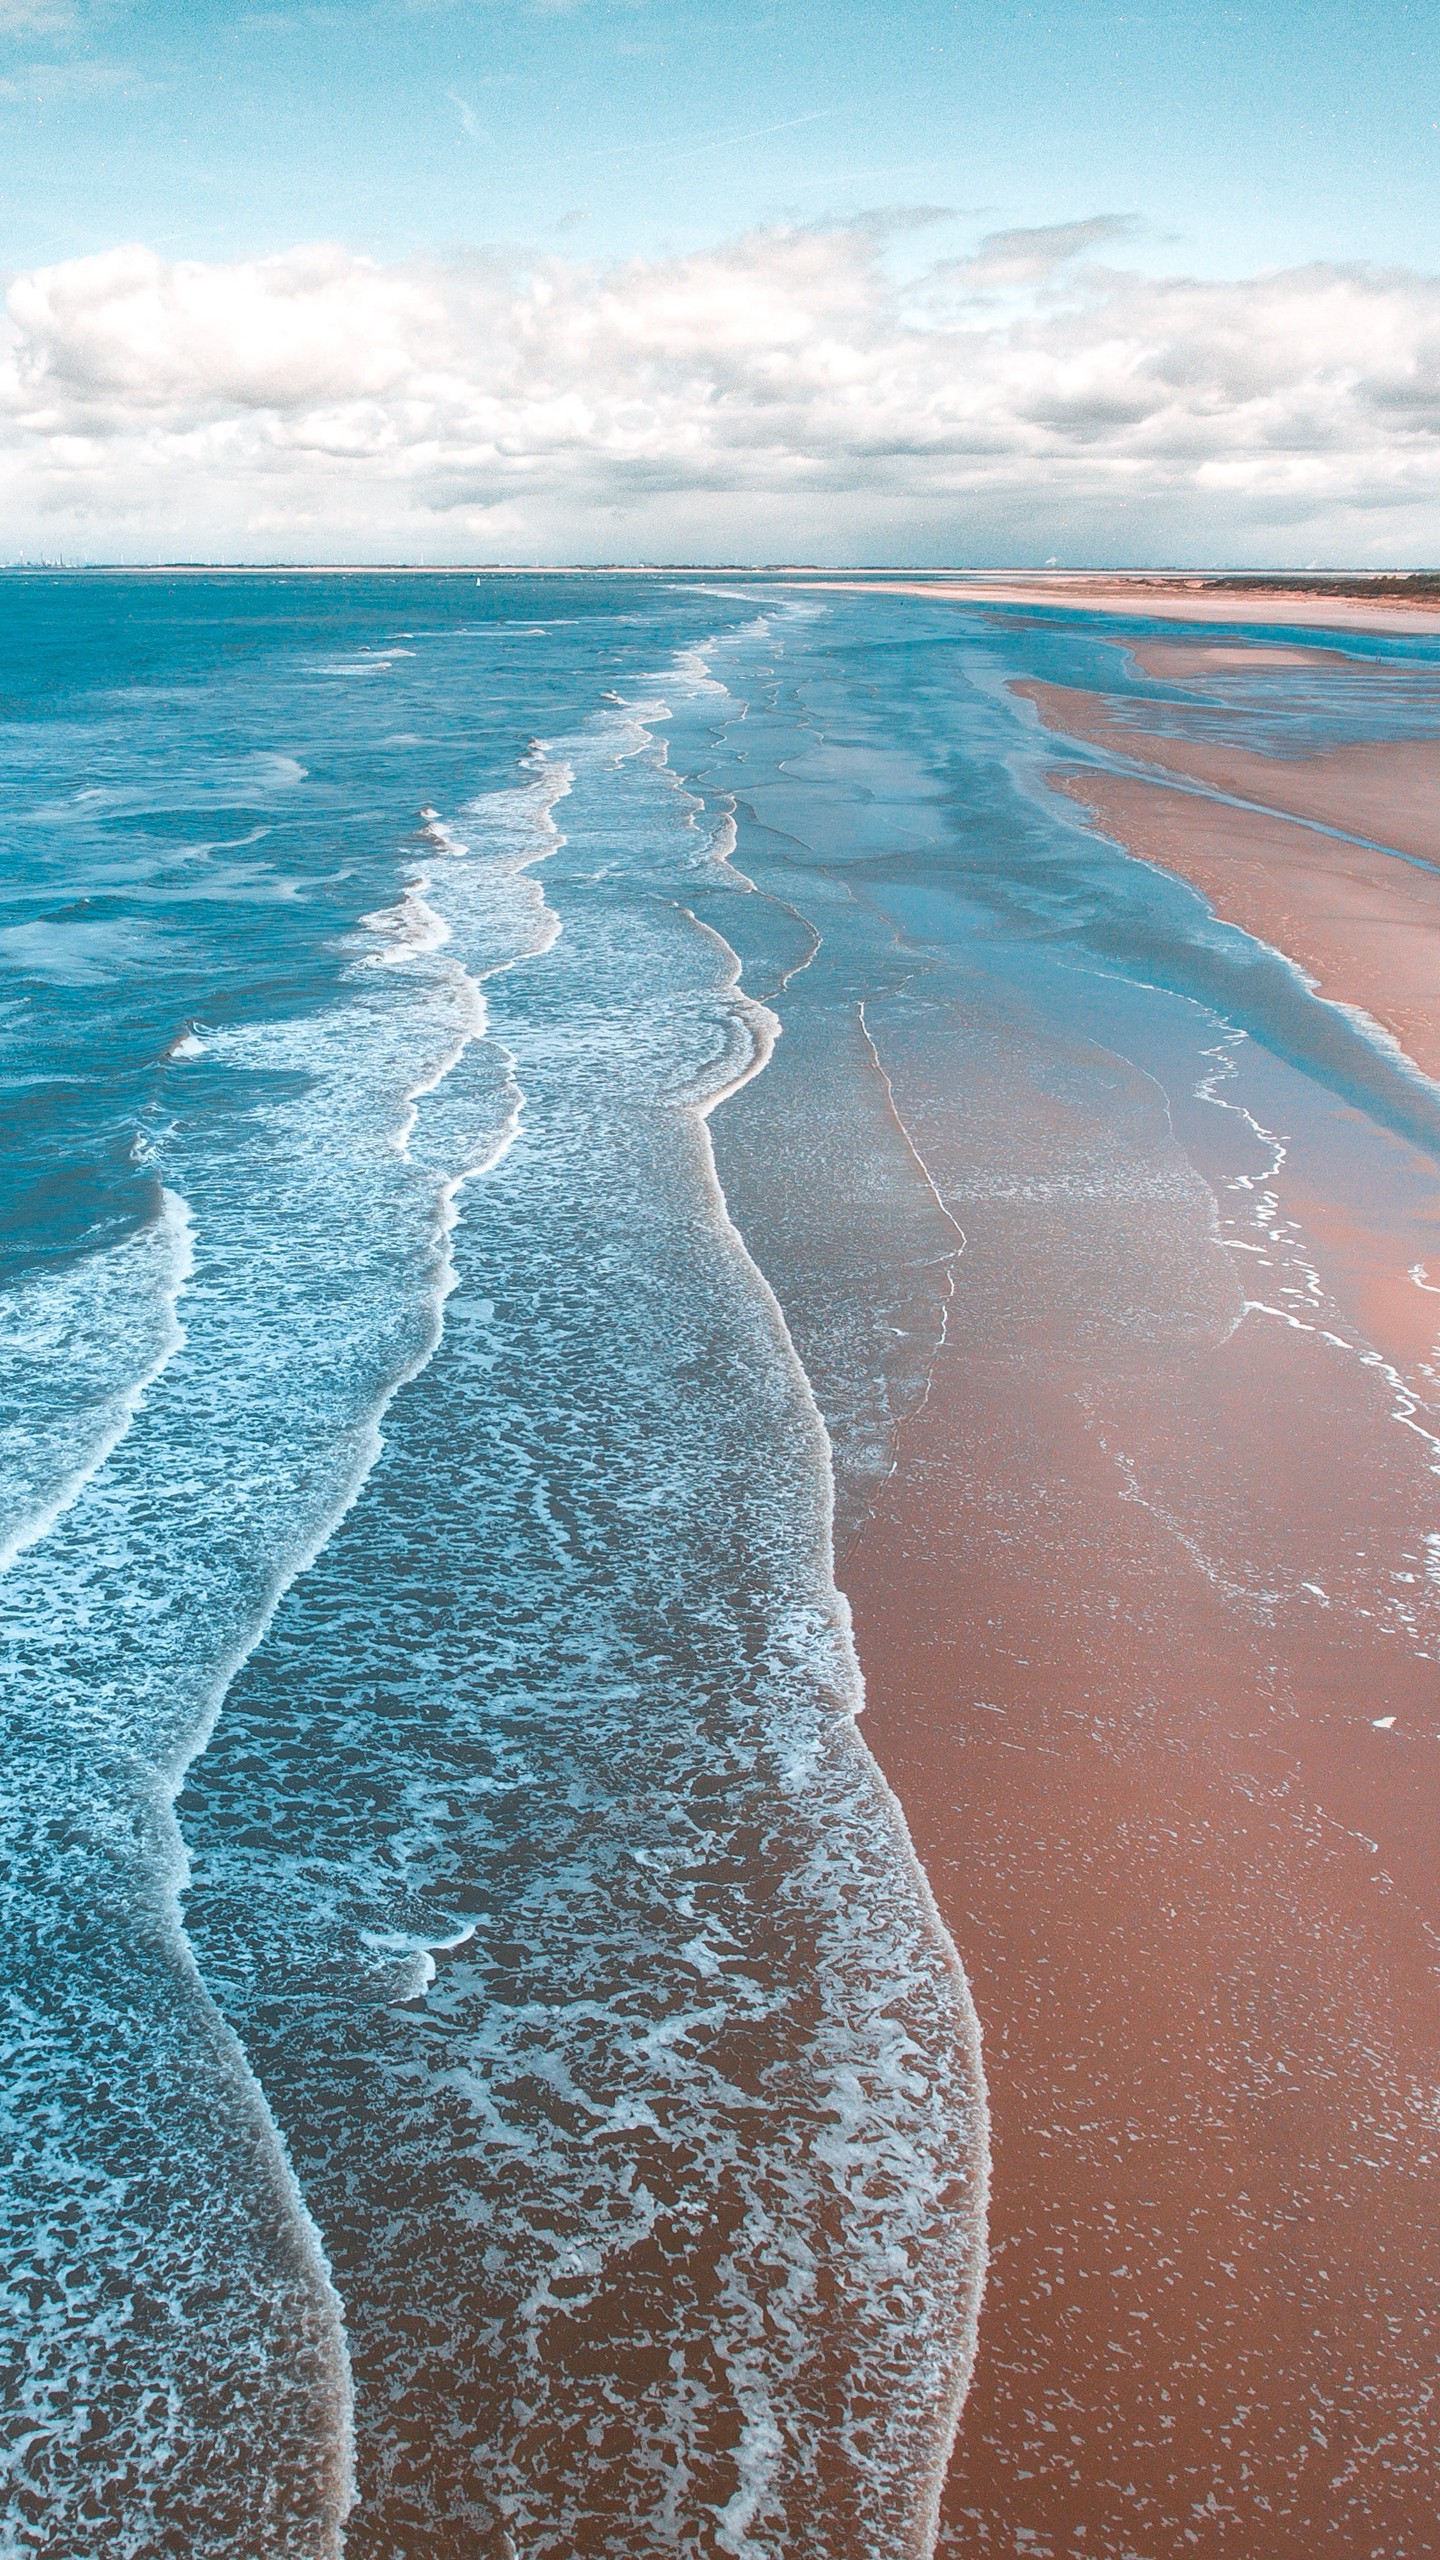 Обои на телефон океан, прибой, пена, берег, песок - скачать бесплатно в высоком  качестве из категории Природа